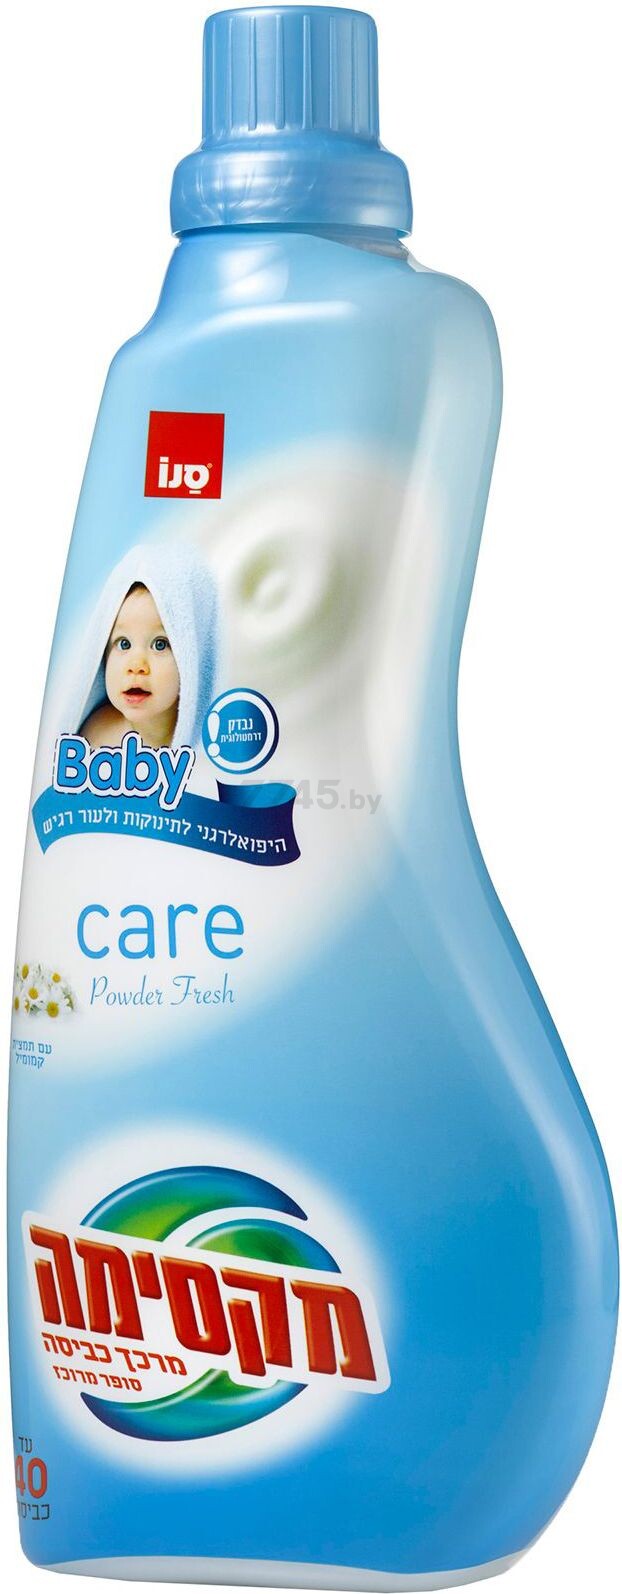 Смягчитель для детского белья SANO Maxima Care Baby Powder Fresh концентрат 1 л (69003)